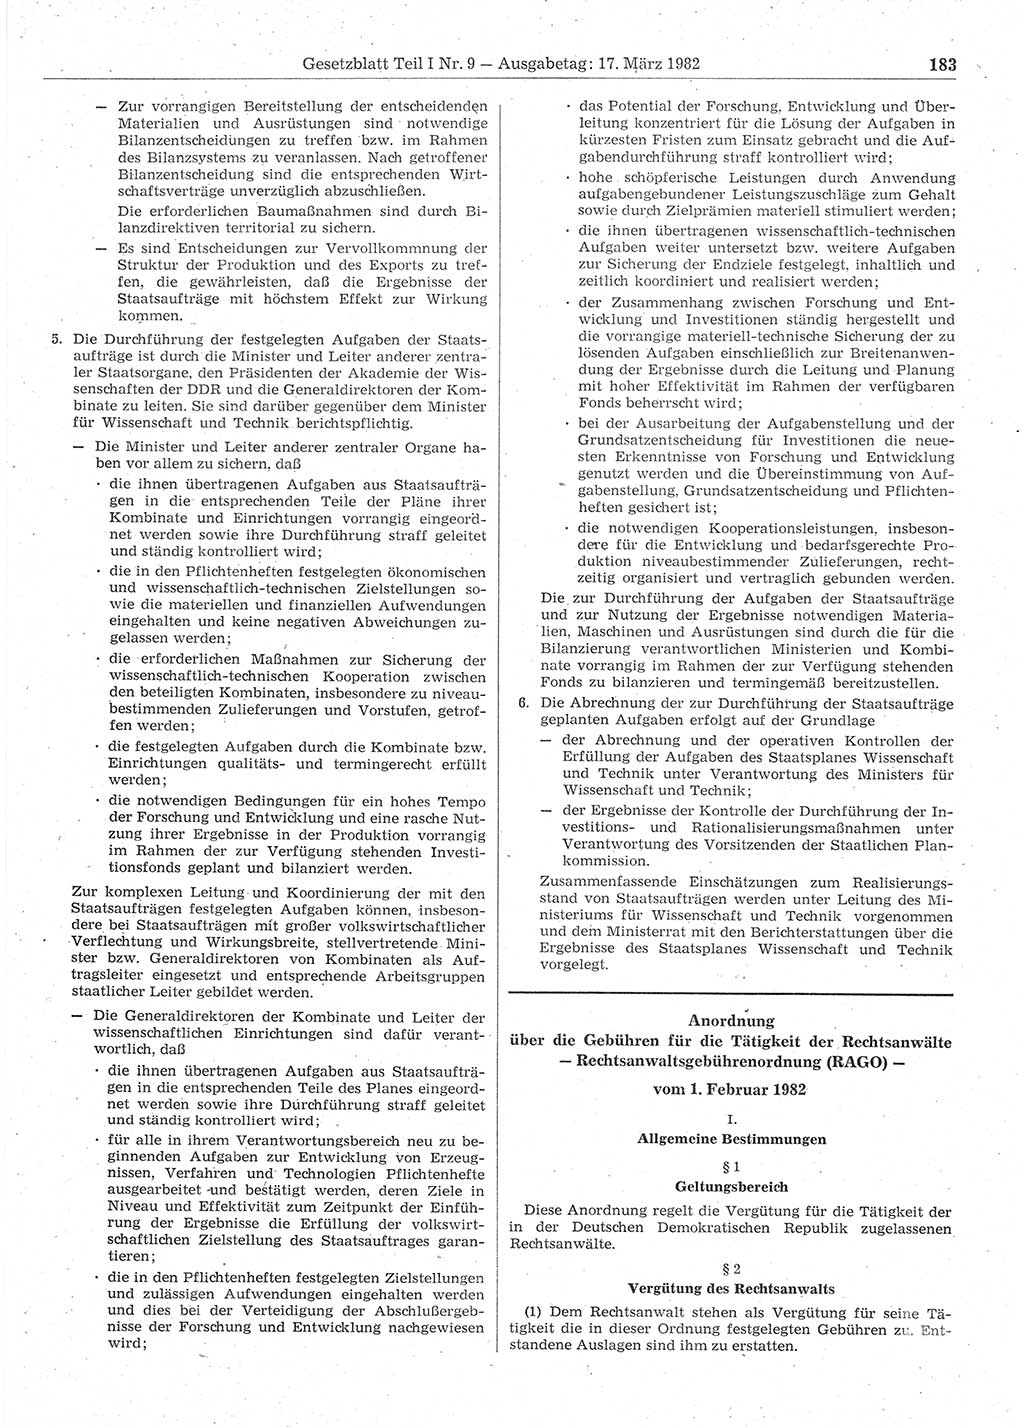 Gesetzblatt (GBl.) der Deutschen Demokratischen Republik (DDR) Teil Ⅰ 1982, Seite 183 (GBl. DDR Ⅰ 1982, S. 183)